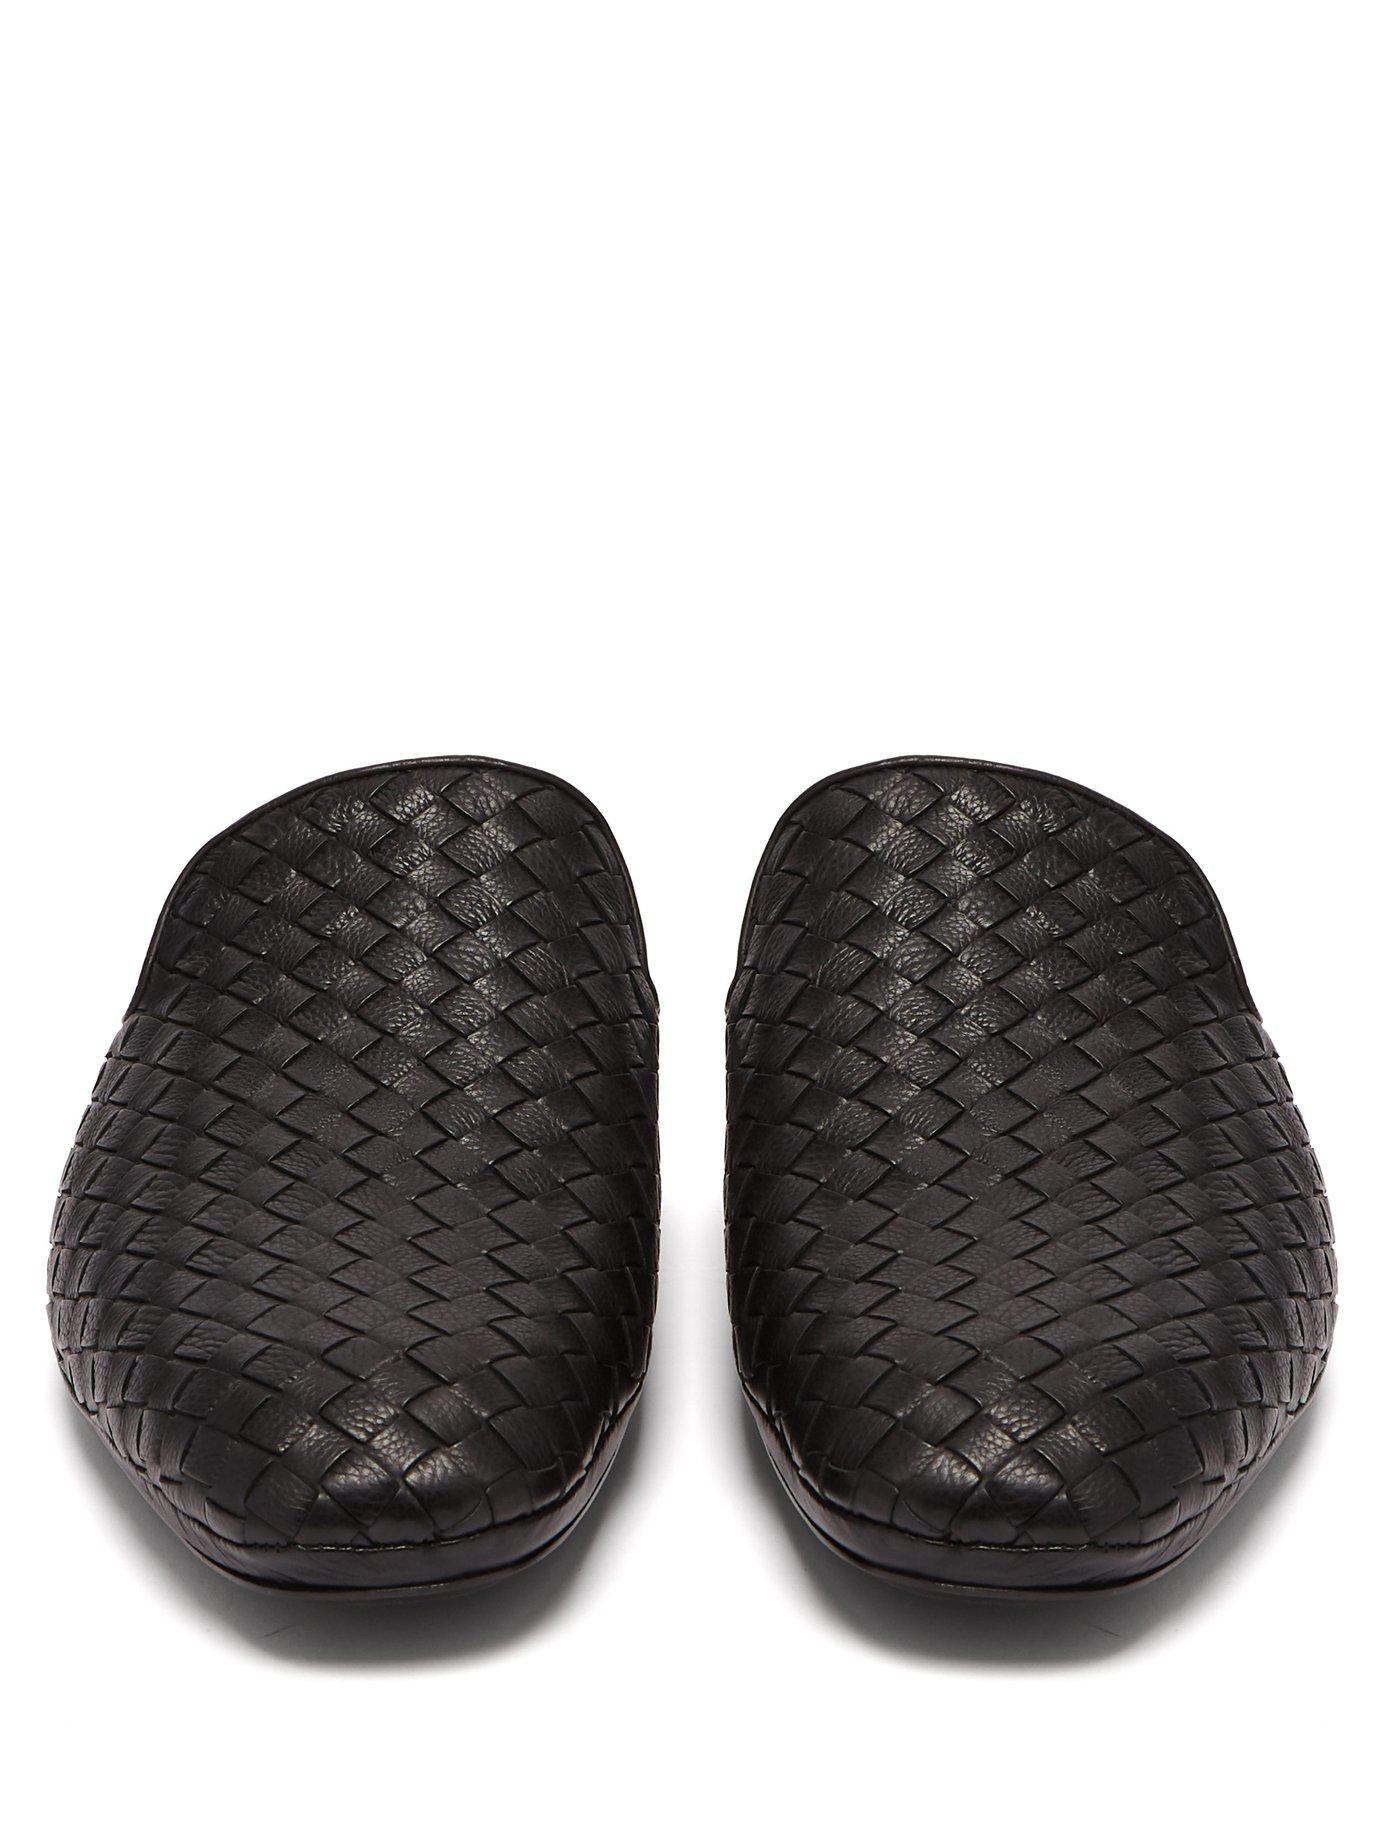 Bottega Veneta Intrecciato Backless Leather Slipper Shoes in Black 